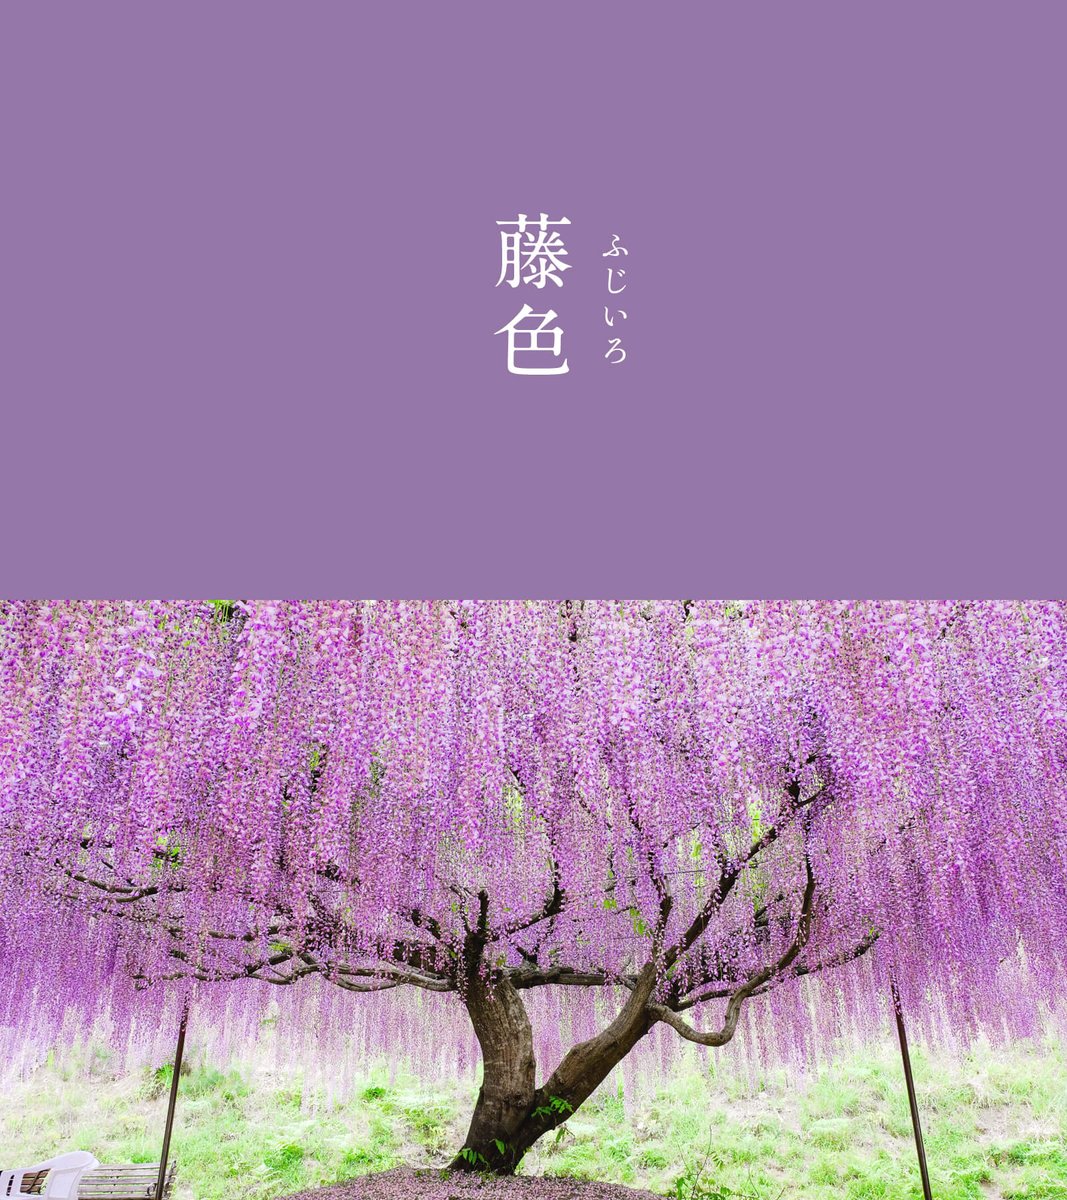 藤色（ふじいろ）｜#にっぽんのいろ 藤は花が風に散る様子を表す「風散（ふぢ）」に由来します。平安時代に藤色として広まり、薄い青紫色の基本色となりました。 明治時代、樋口一葉が著した『たけくらべ』にも登場しています。 ▼5月のにっぽんのいろはこちら 543life.com/content/nippon…